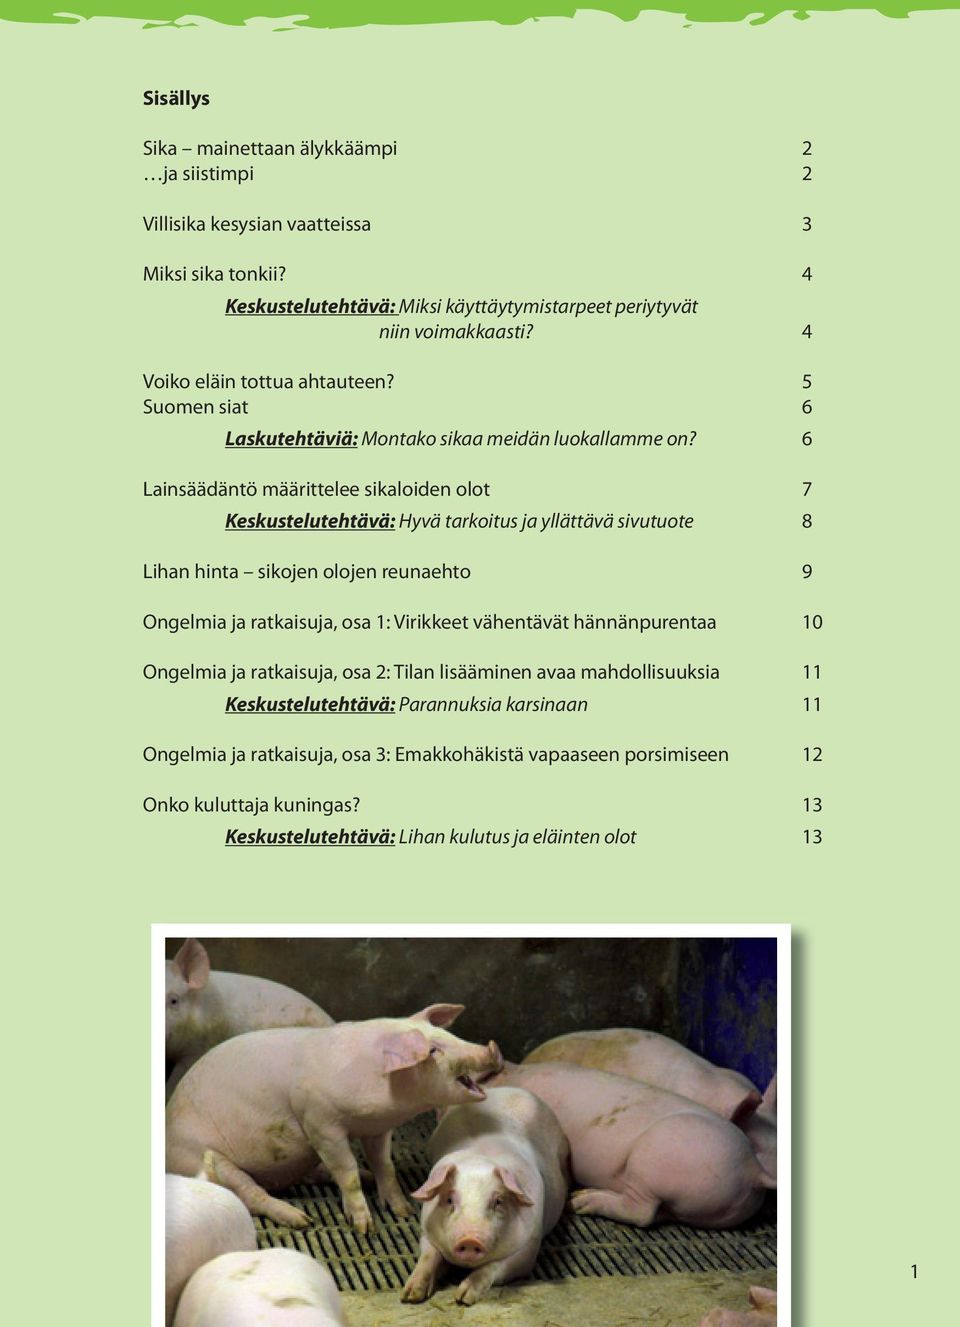 6 Lainsäädäntö määrittelee sikaloiden olot 7 Keskustelutehtävä: Hyvä tarkoitus ja yllättävä sivutuote 8 Lihan hinta sikojen olojen reunaehto 9 Ongelmia ja ratkaisuja, osa 1: Virikkeet